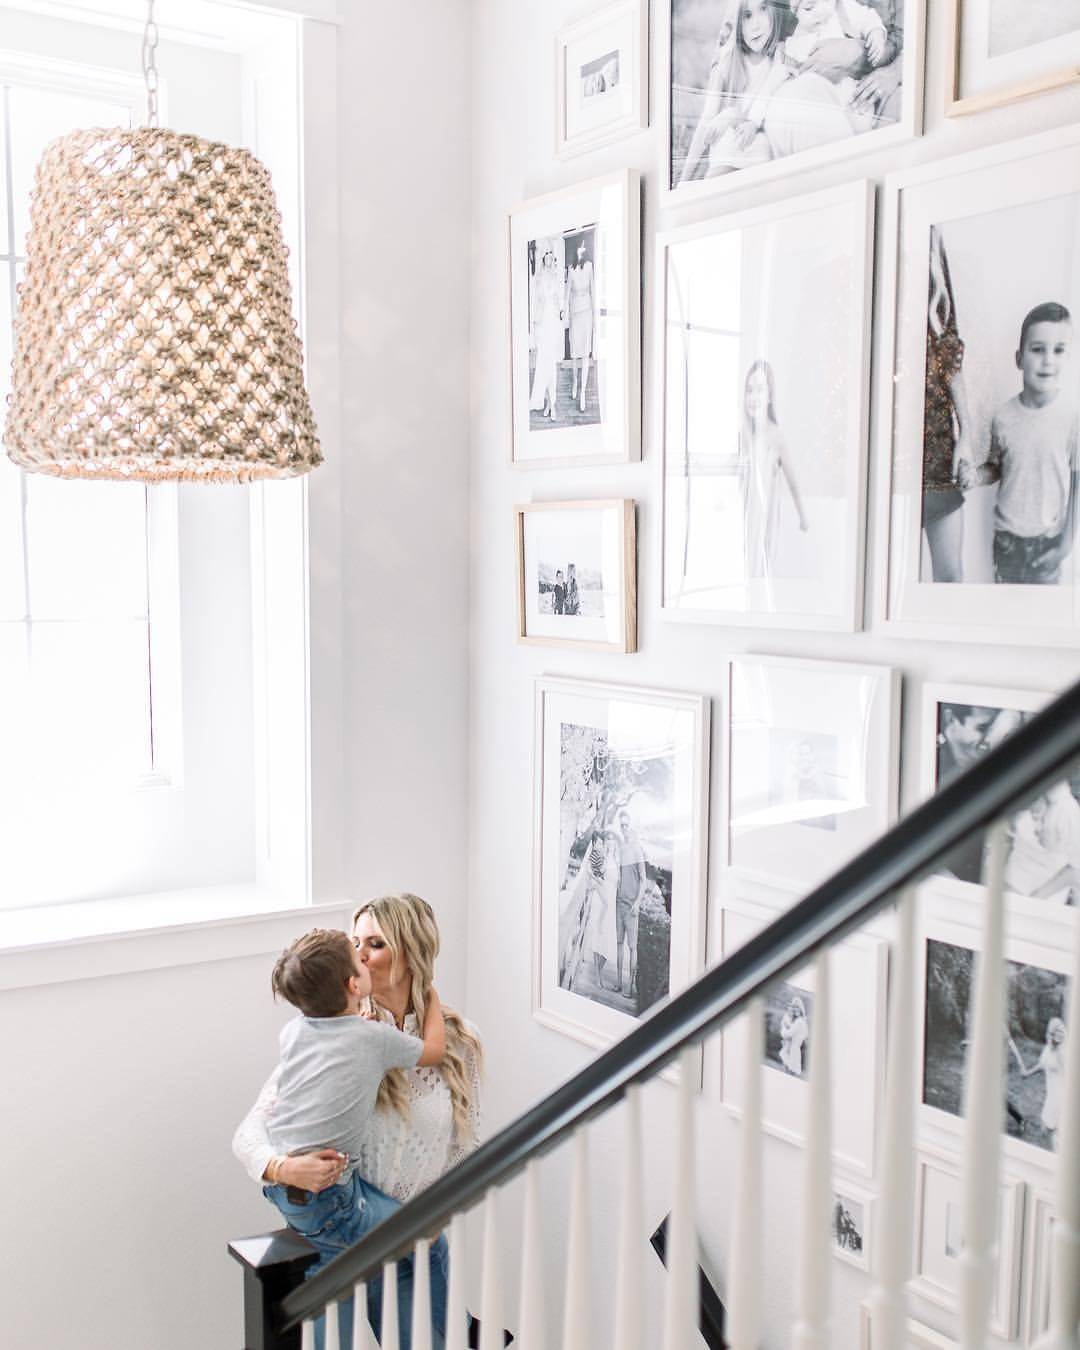 Pared de la escalera decorada con fotografías familiares en blanco y negro